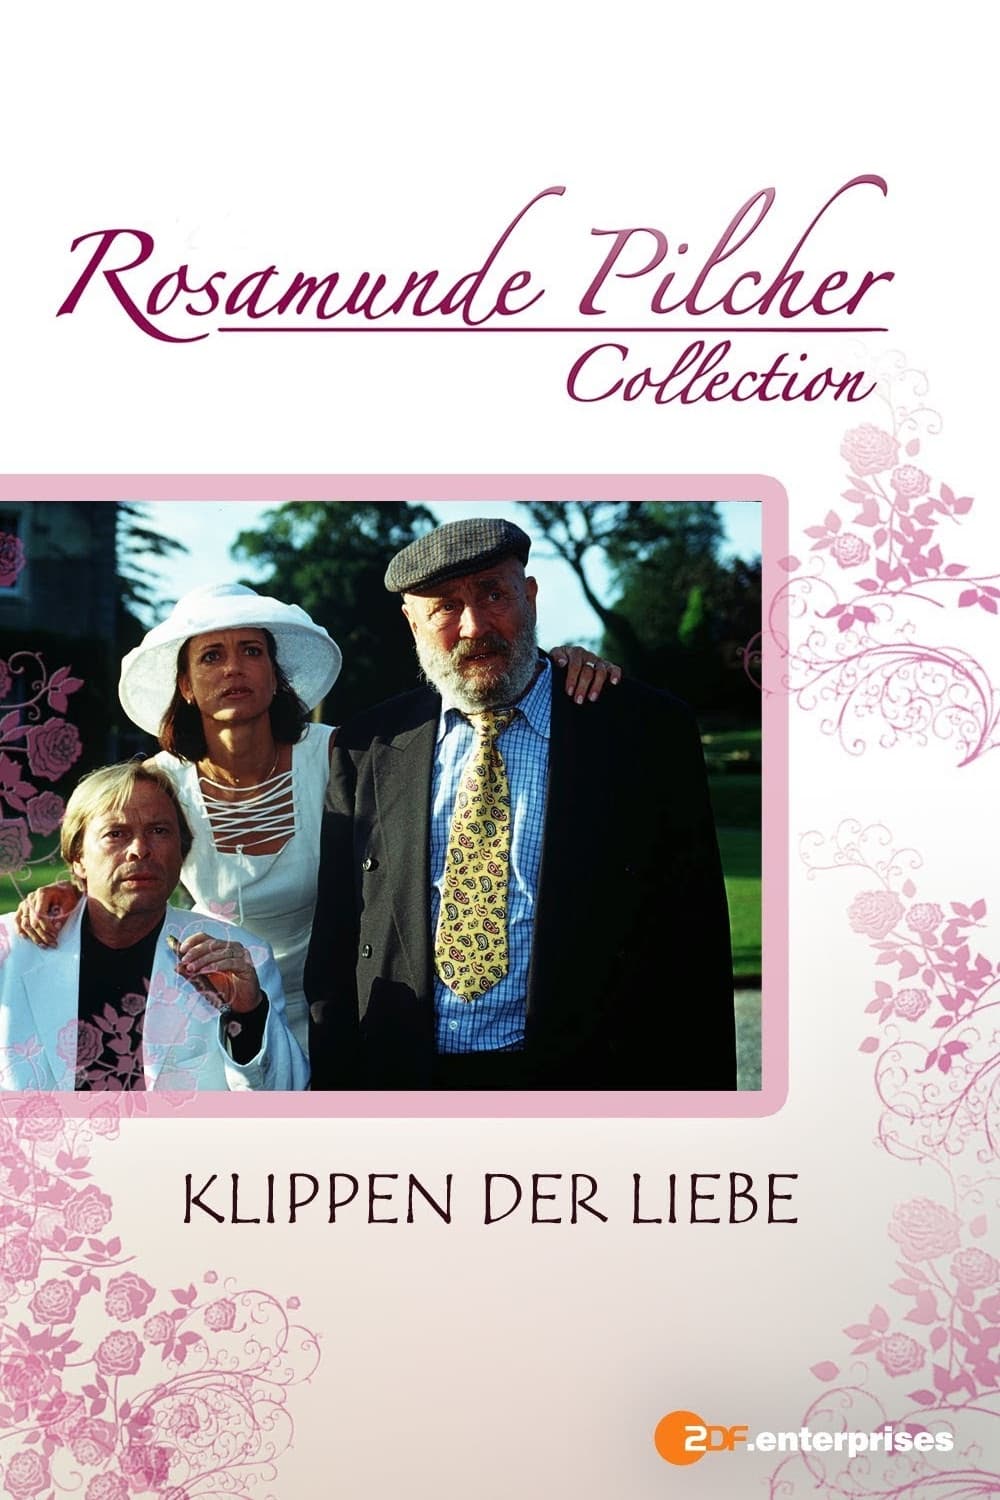 Rosamunde Pilcher: Klippen der Liebe (1999)